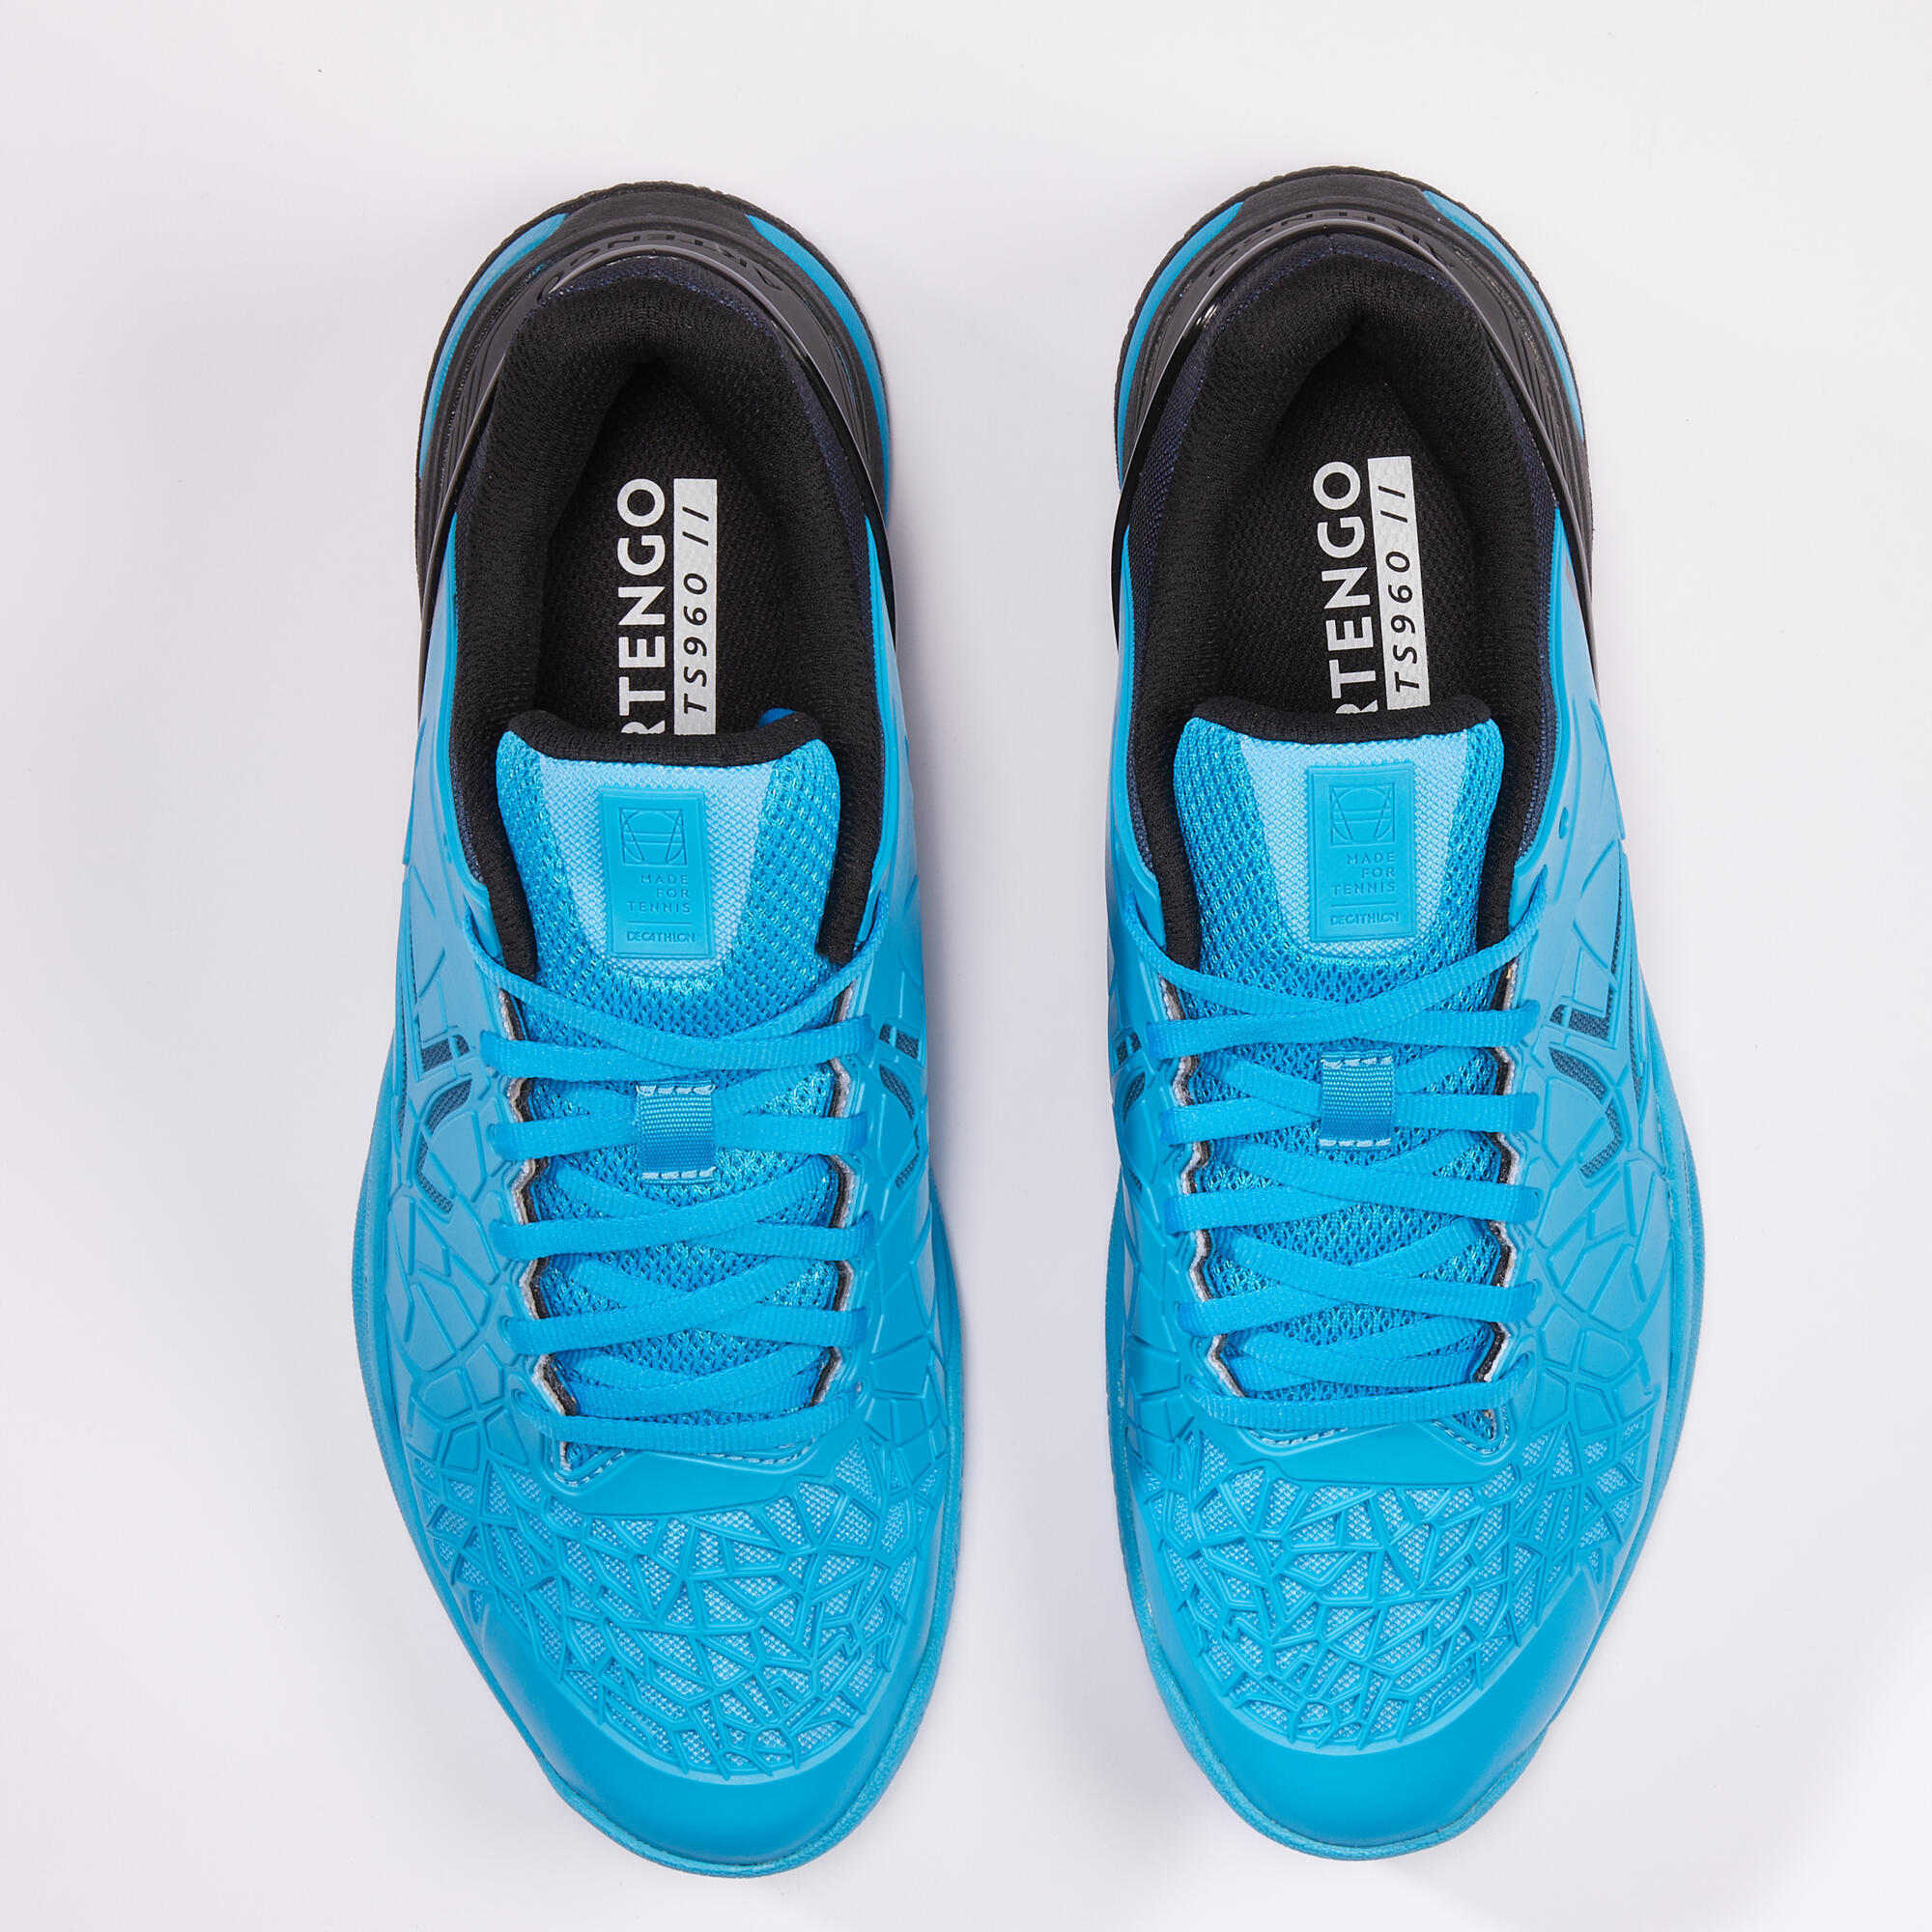 Men's Multicourt Tennis Shoes Strong Pro - Blue/Black 7/8